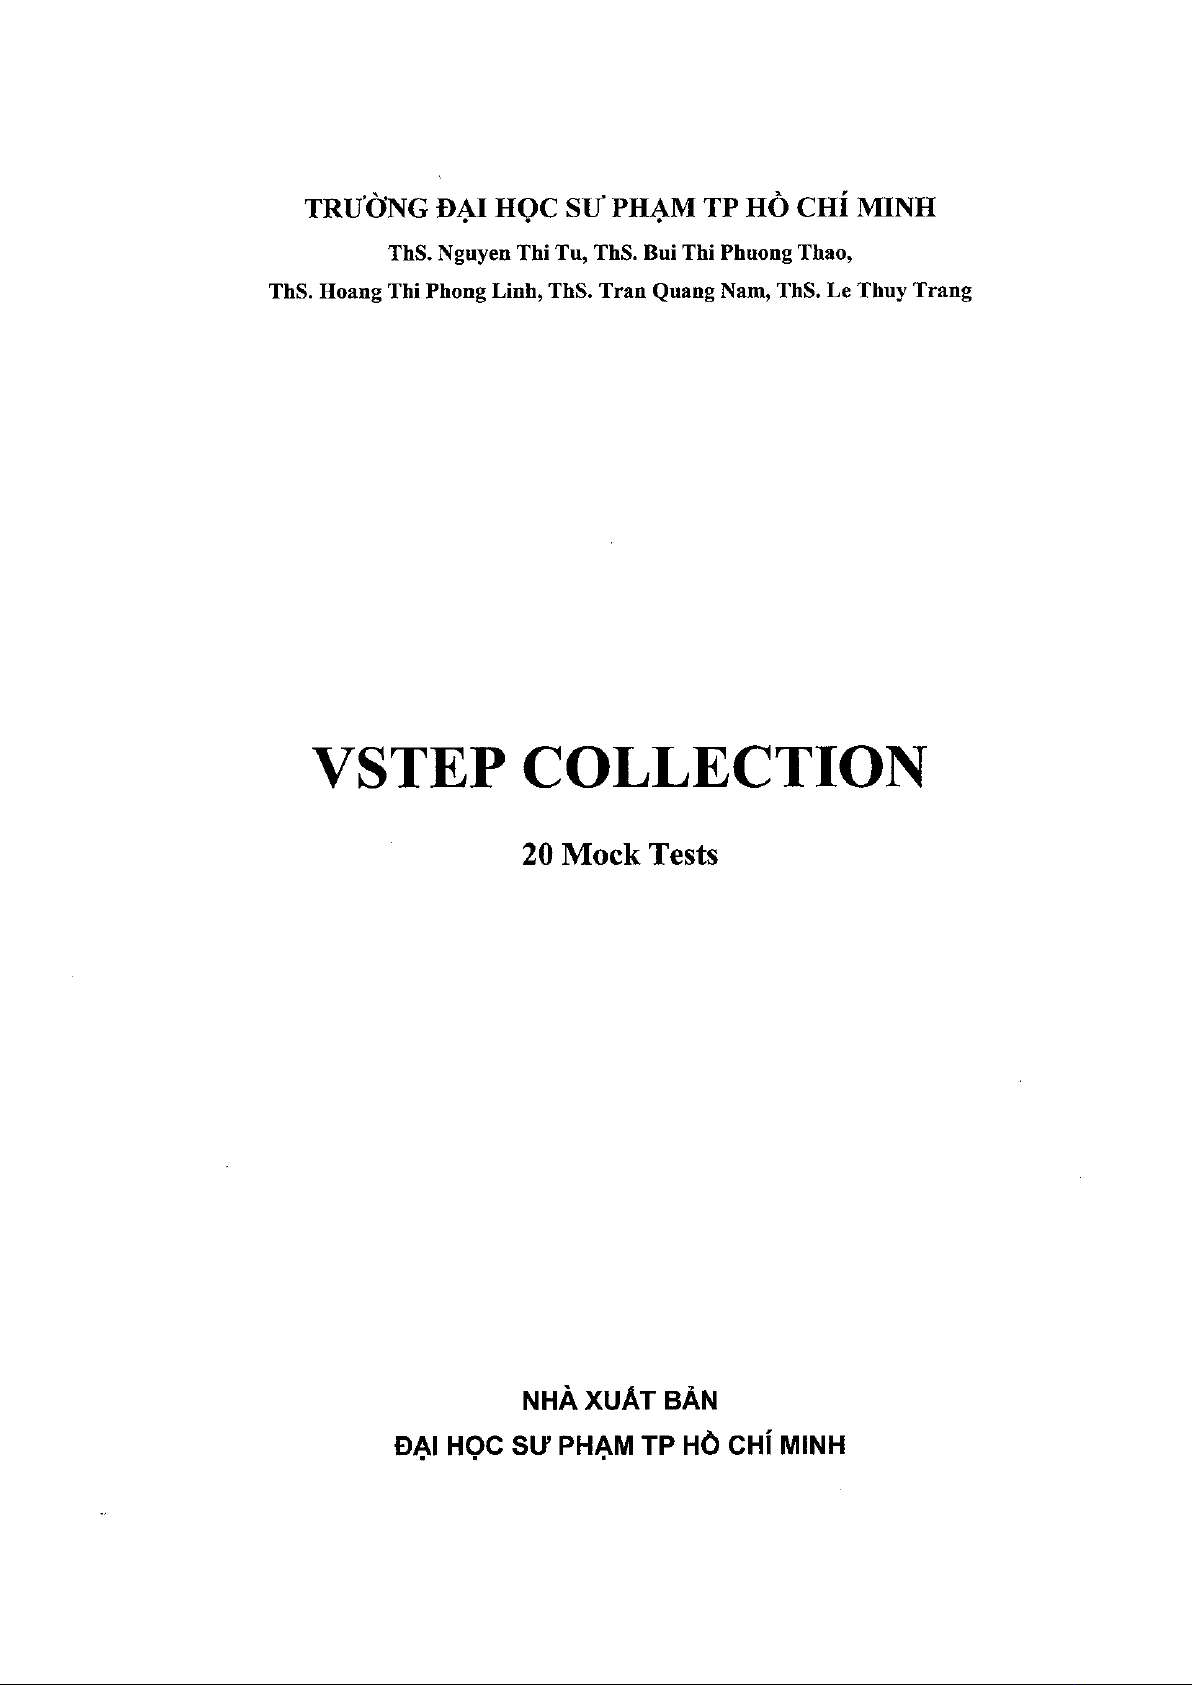 vstep collection 20 mock test pdf